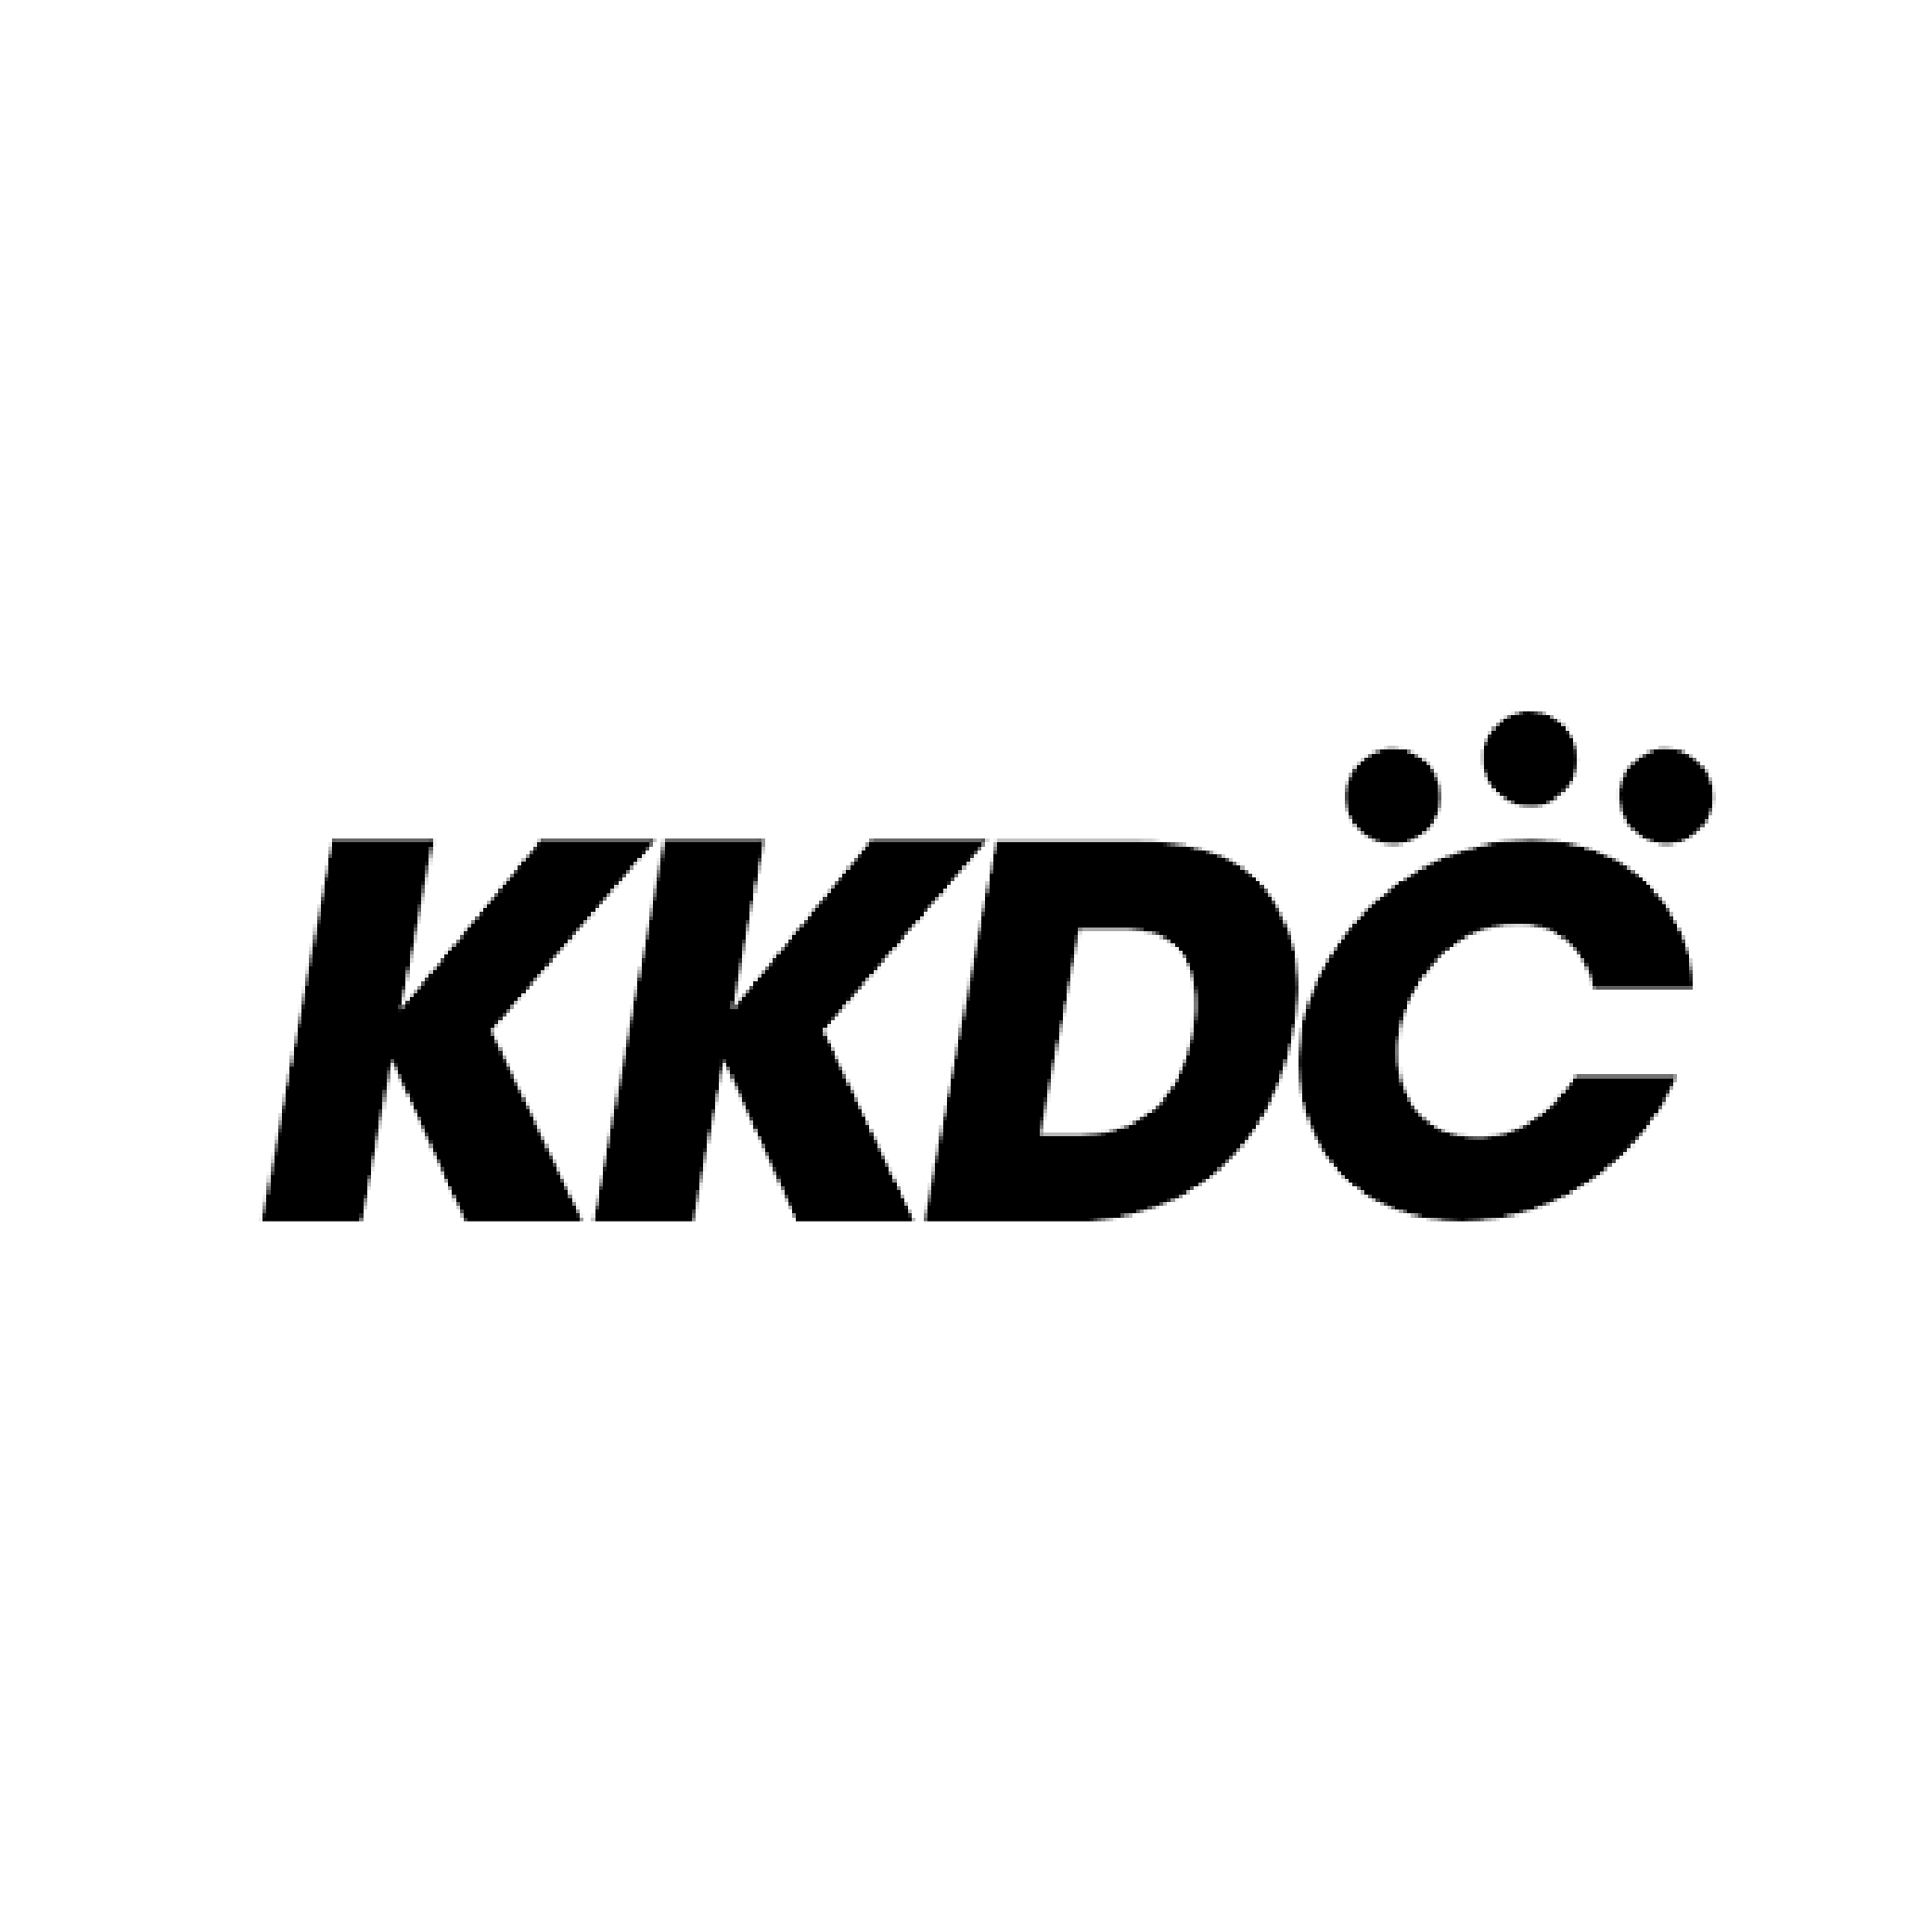 KKDC New Zealand